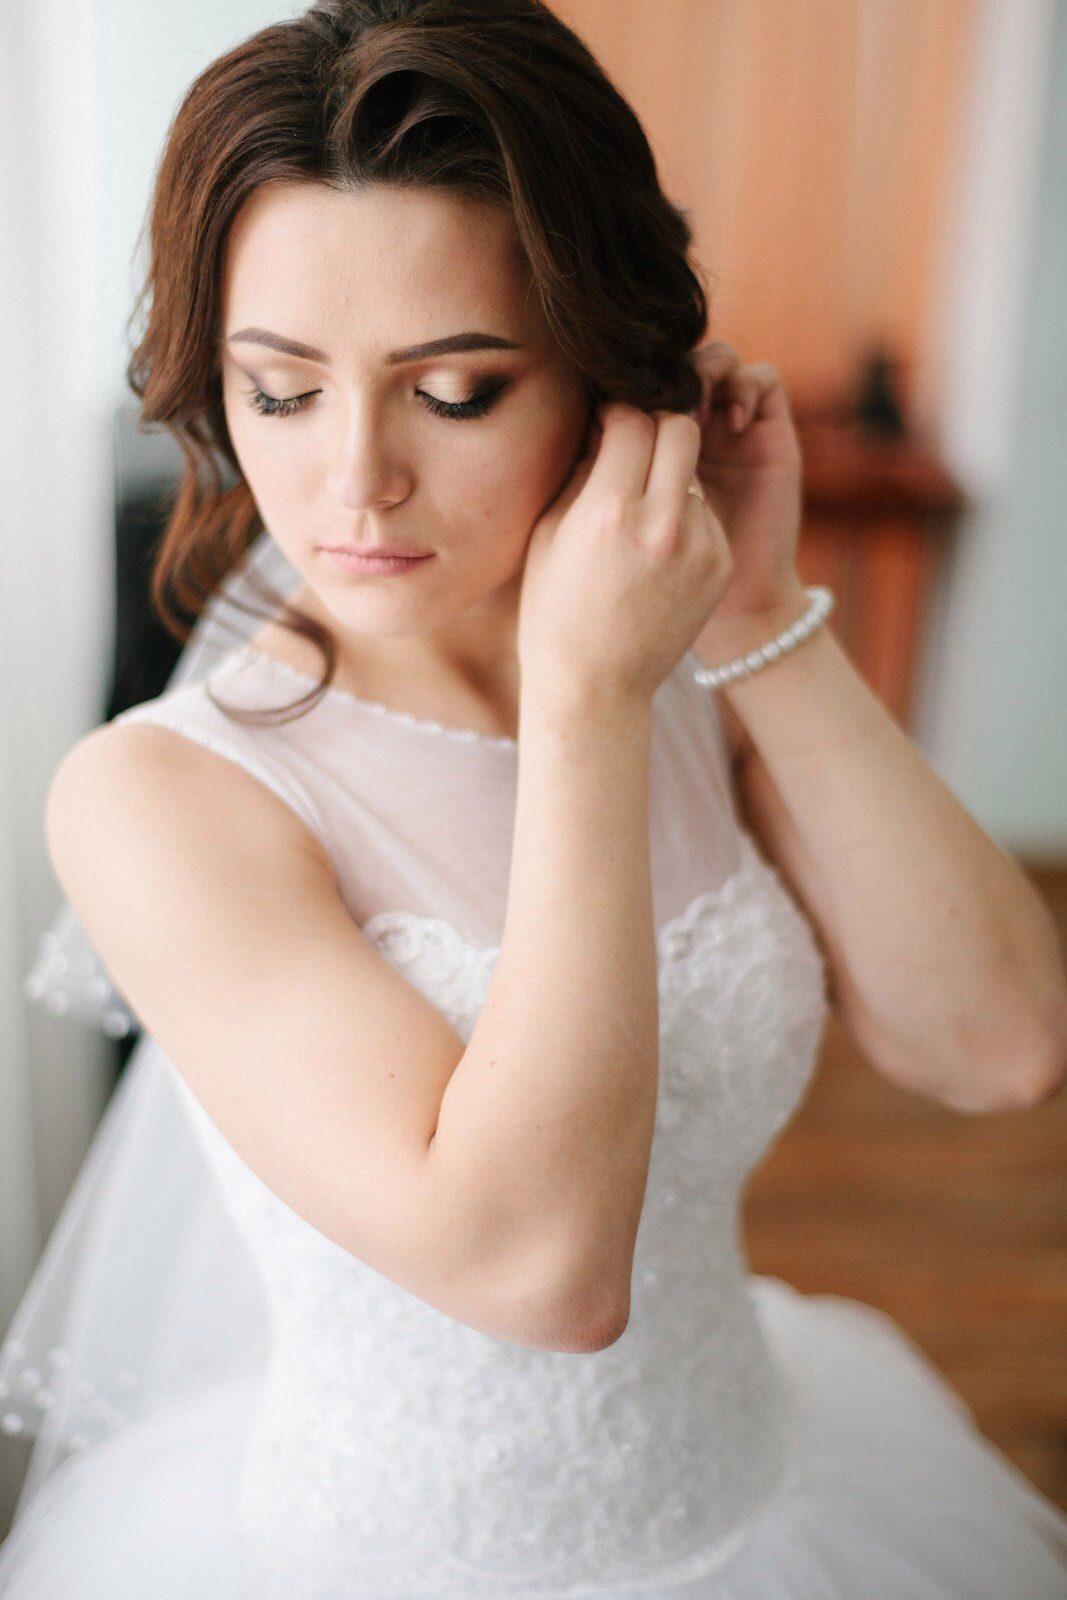 В фотоконкурсе «Самая красивая невеста» на портале PG11.ru появились первые участницы